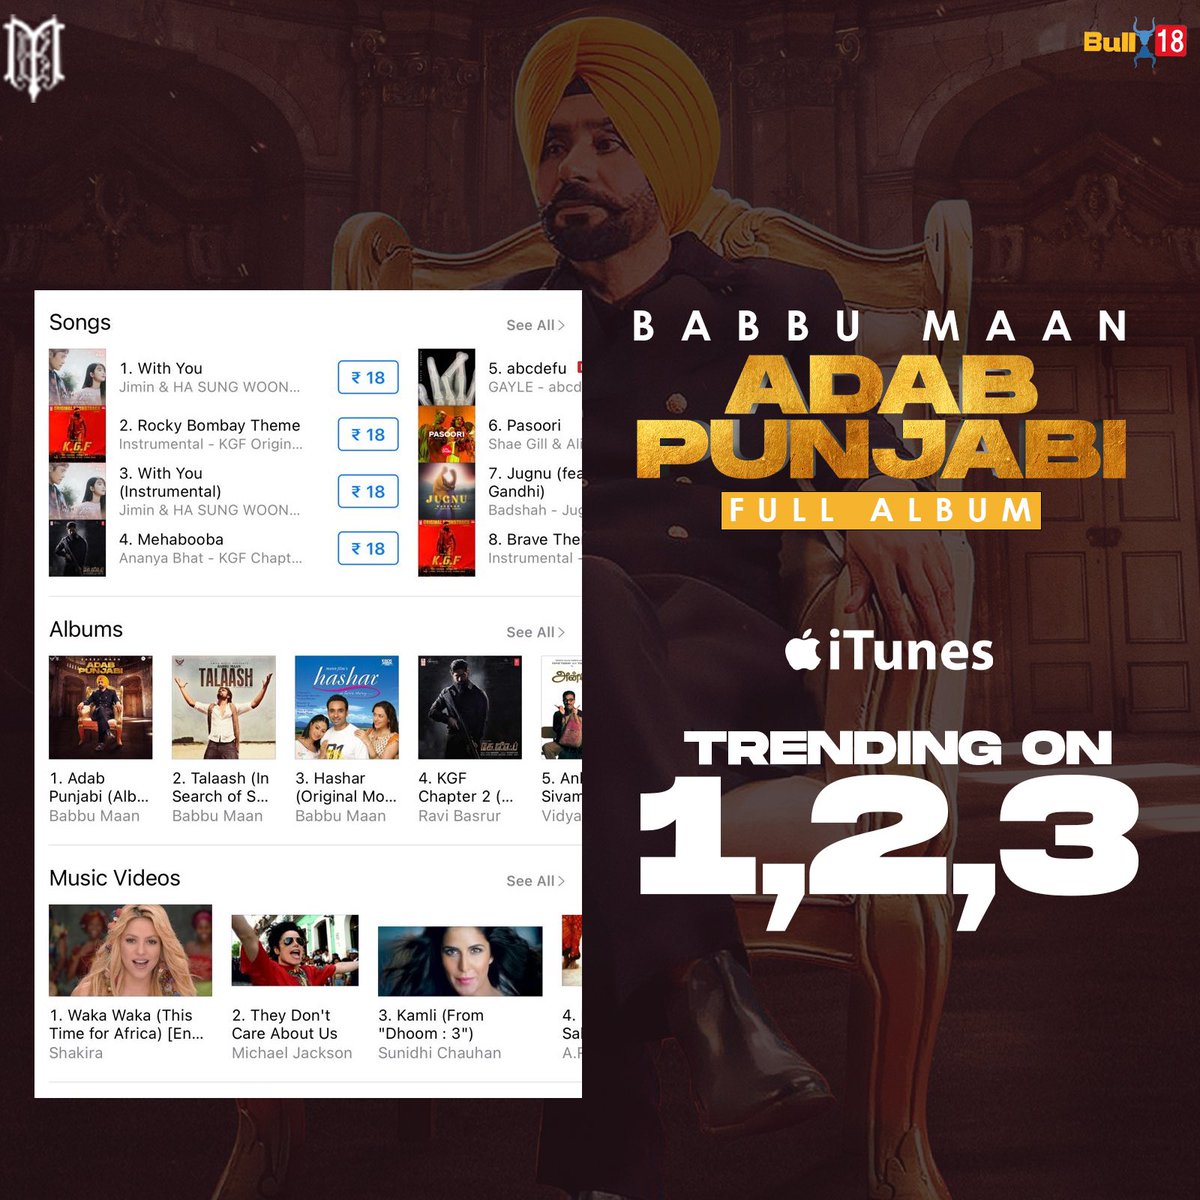 @BabbuMaan bhaji #AdabPunjabi trending on itunes in various categories of top3 @iTunes @Bull18Network